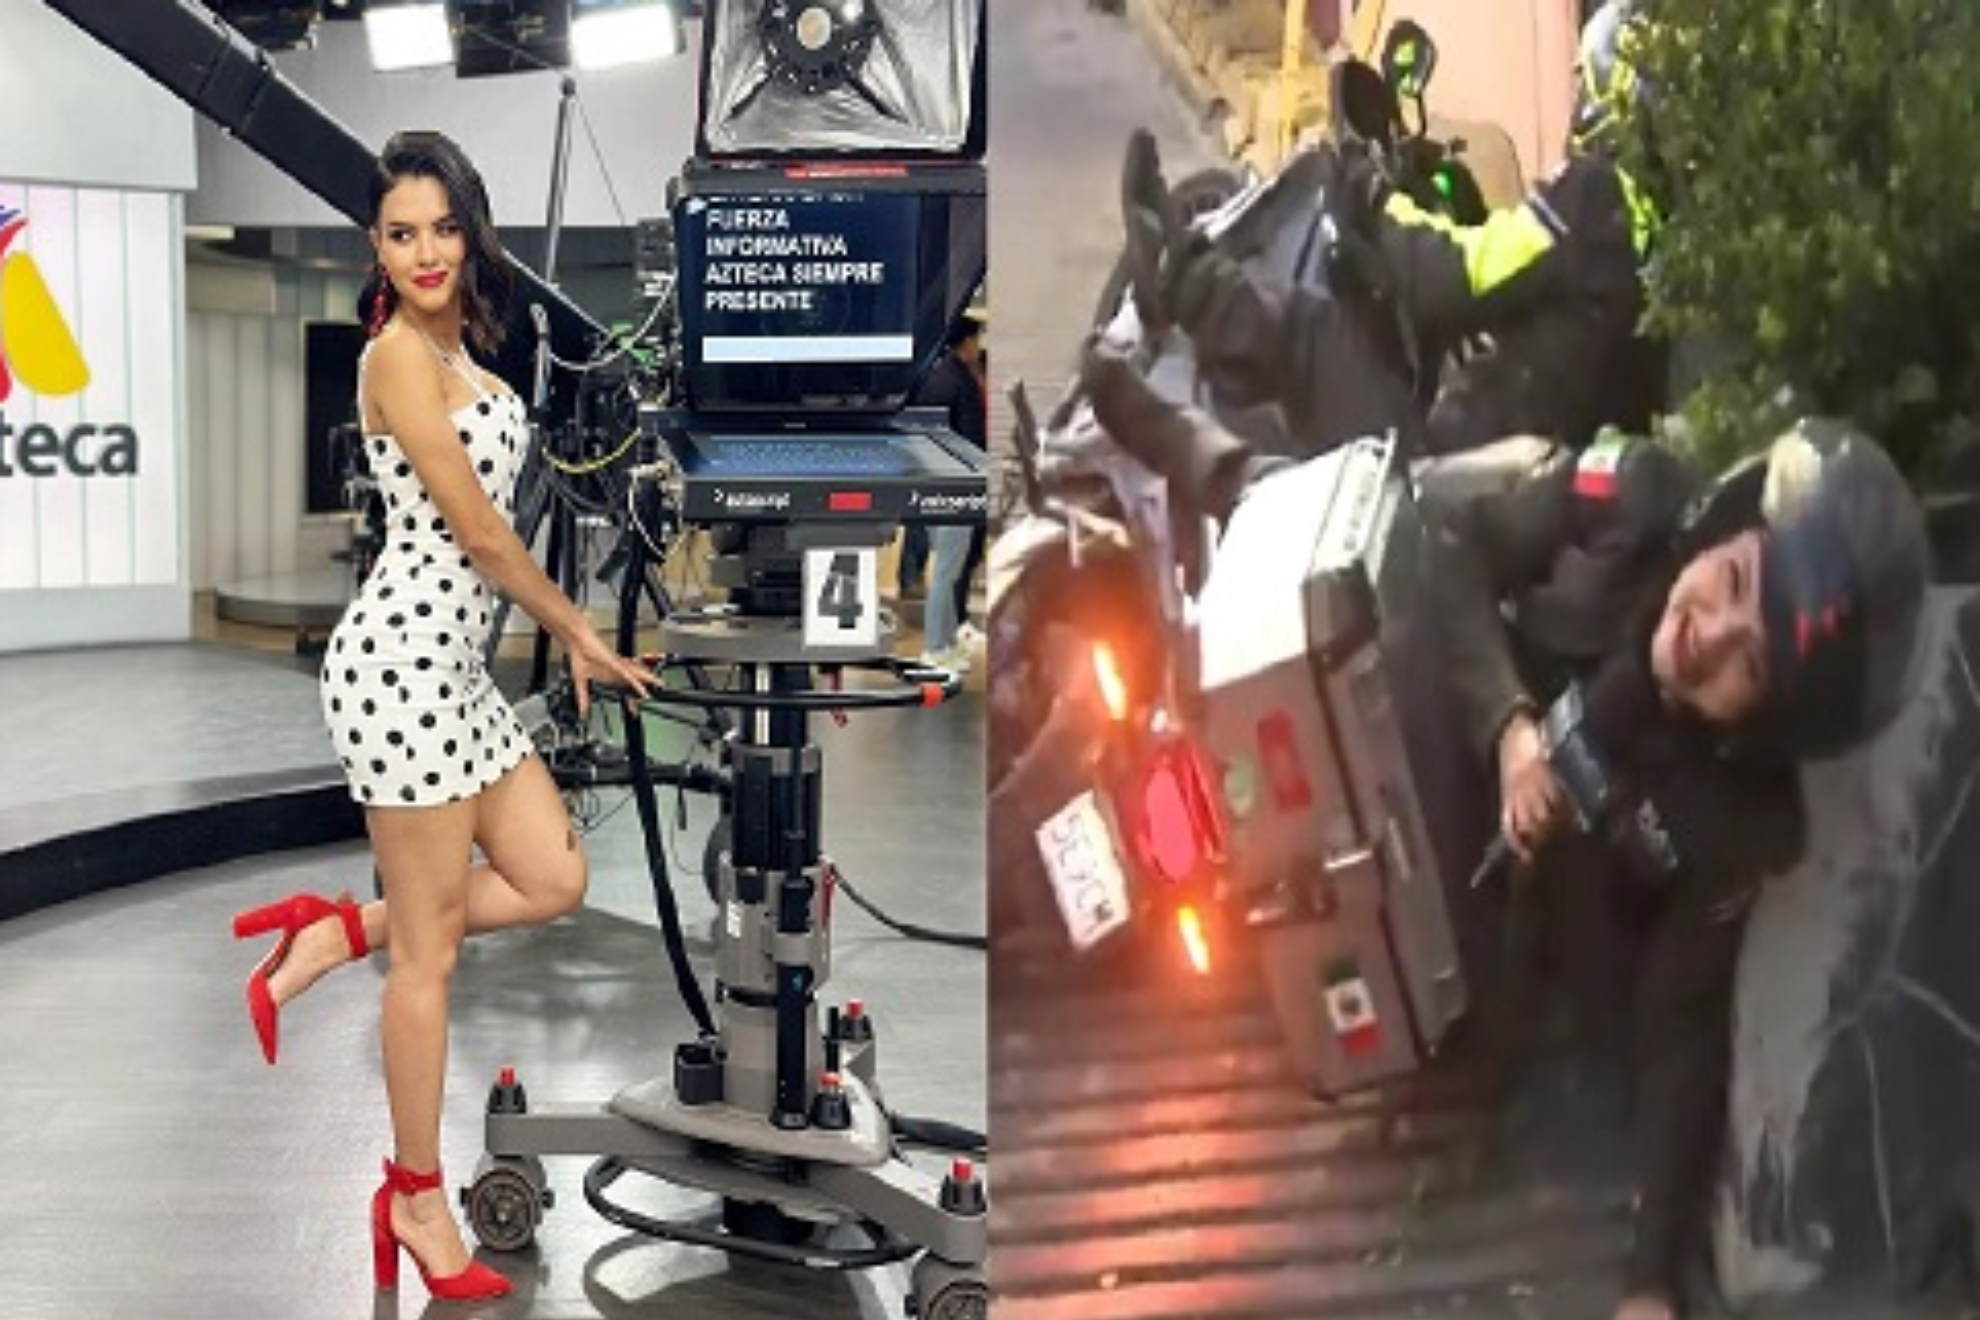 Quin es Kariana Colmenero? Reportera que se cae de una moto enamora con sus fotos en Instagram